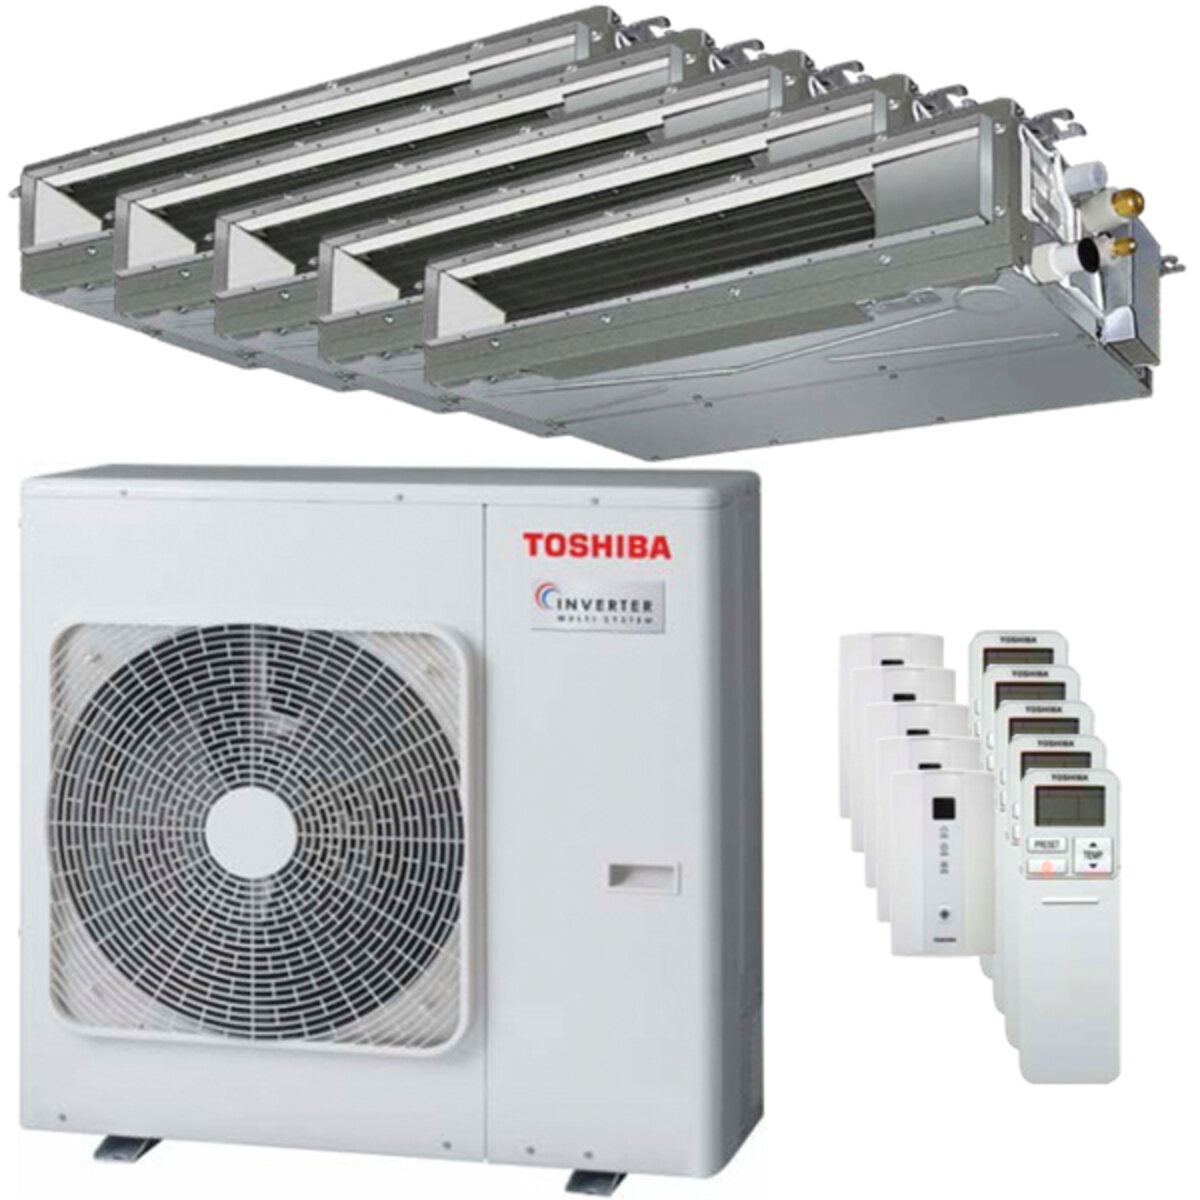 Toshiba Ductable Air Conditioner U2 Penta Split 7000 + 9000 + 9000 + 9000 + 16000 BTU Inverter A++ Außengerät 10,0 kW